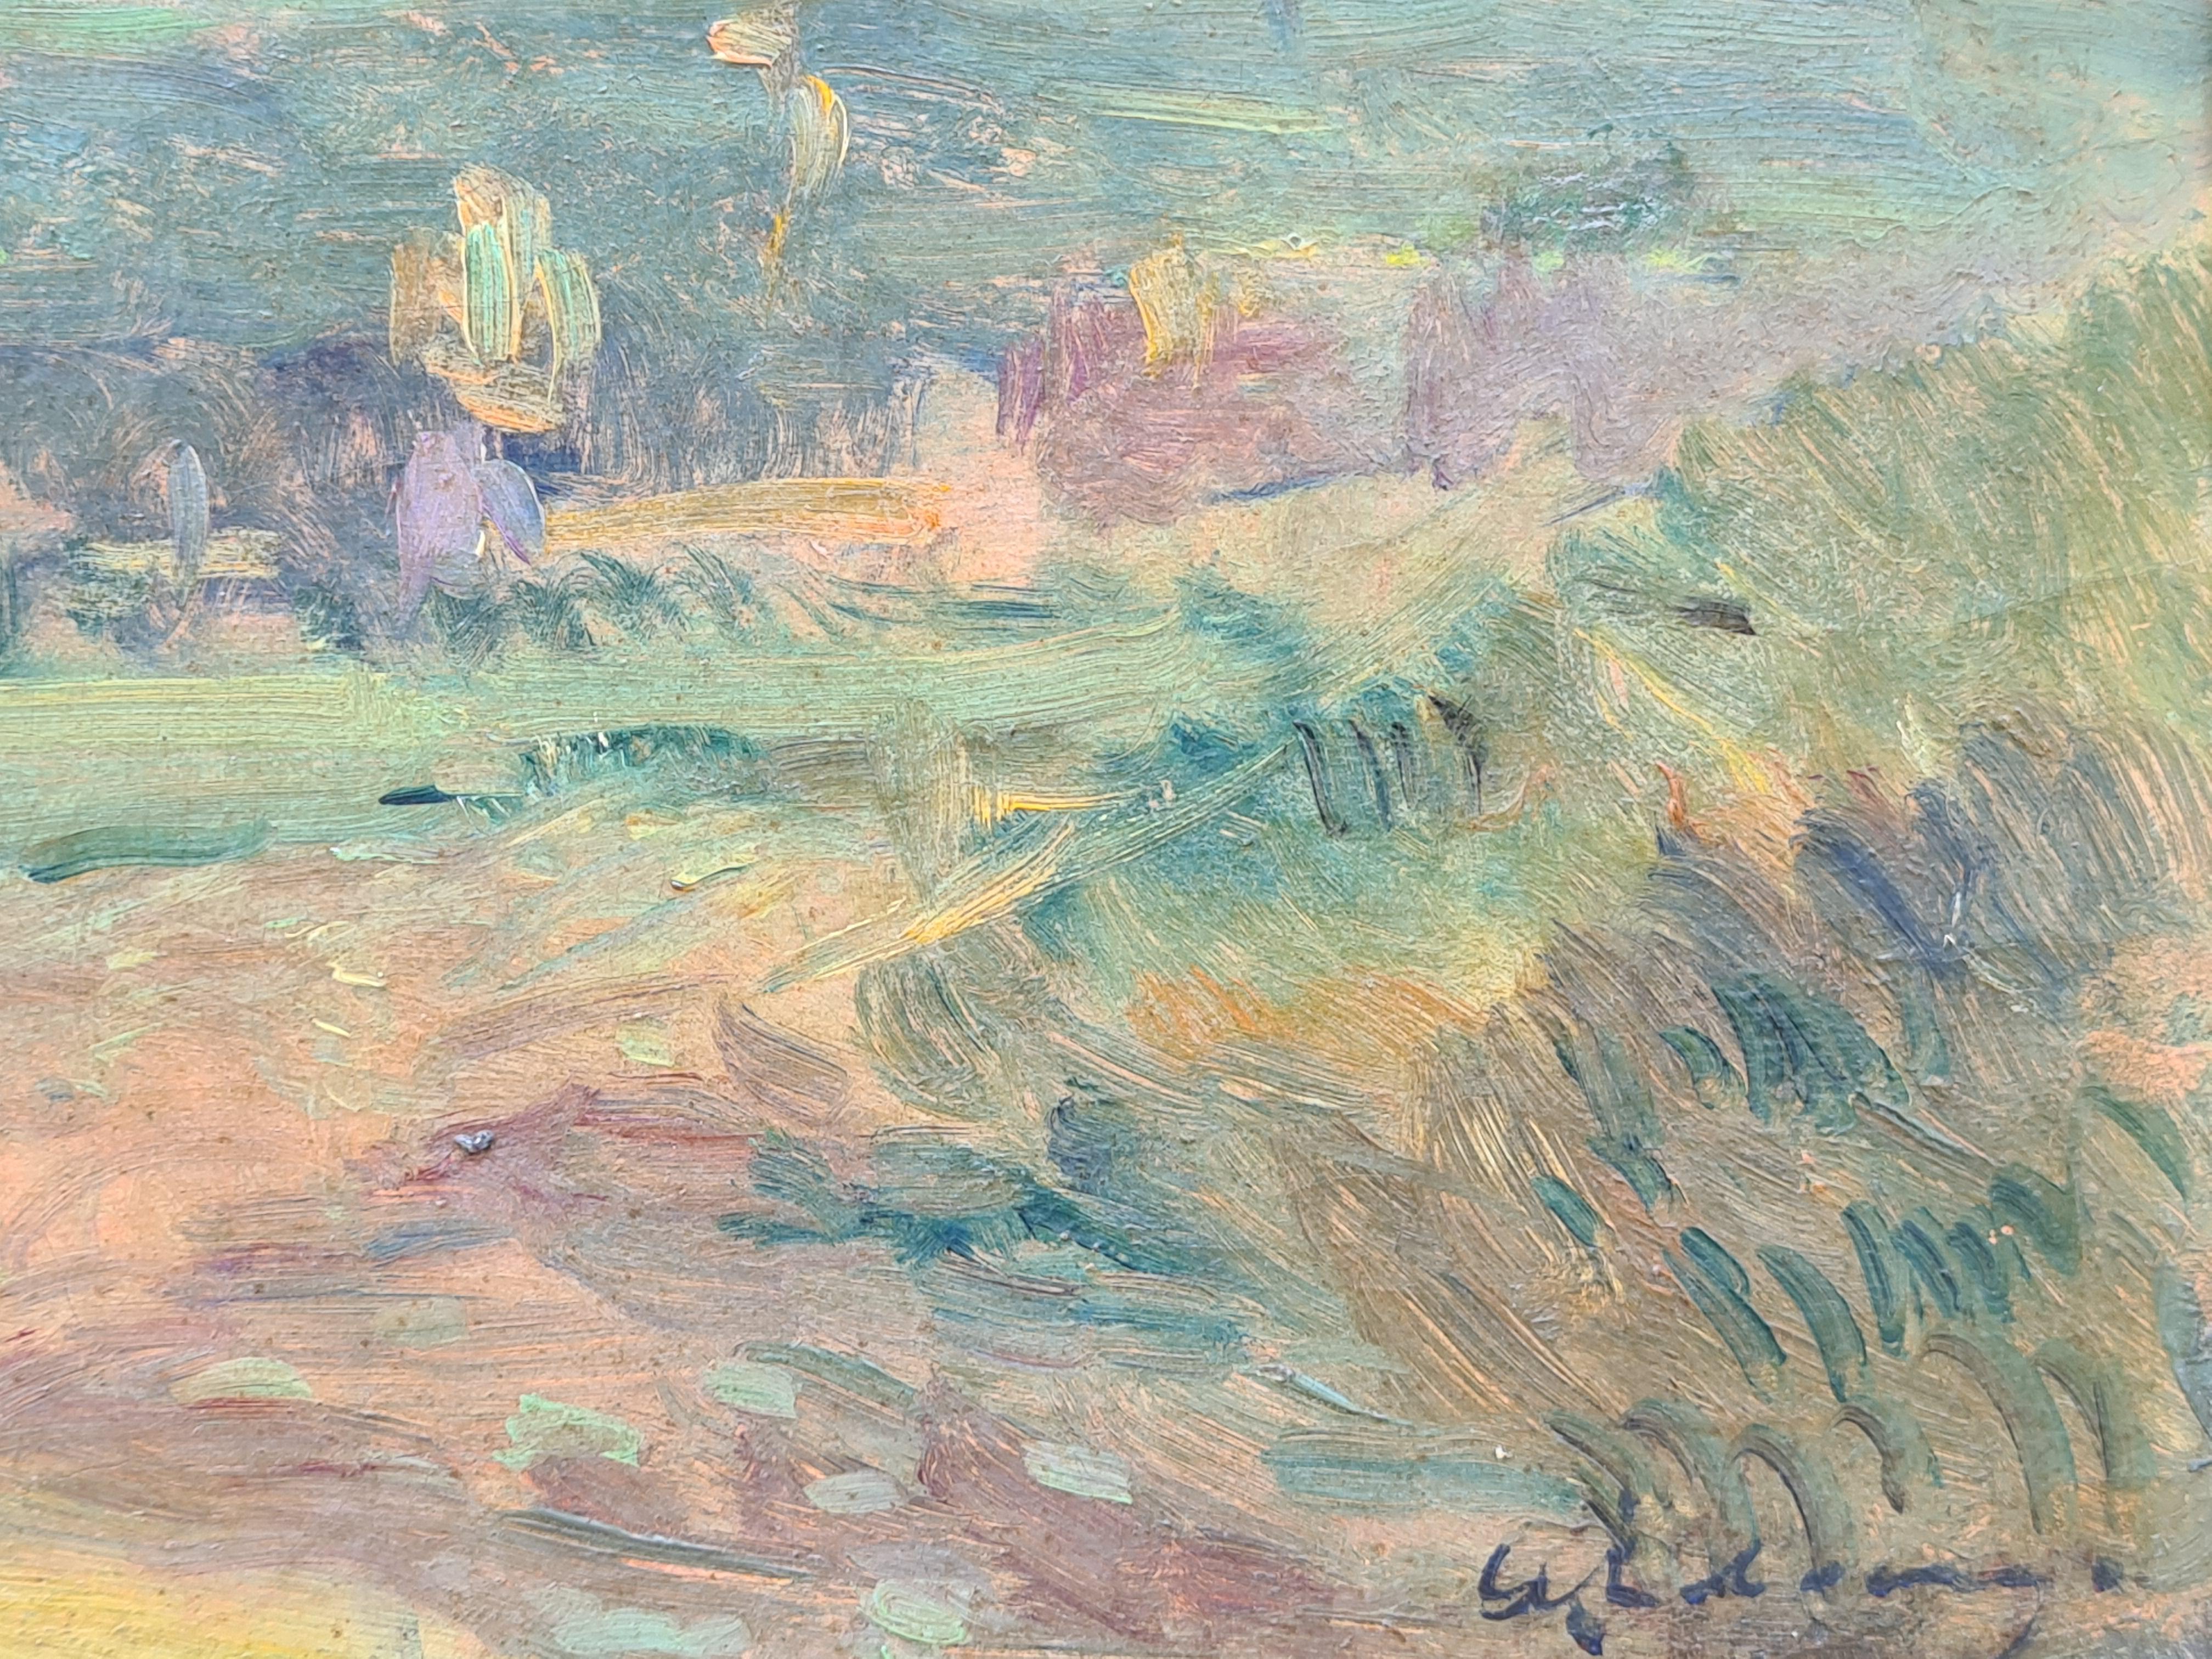 Paysage impressionniste français de la fin du XIXe siècle par Albert Lebourg. Signé en bas à droite. Dans un cadre doré.

Albert Lebourg (français, 1849-1928) est un peintre impressionniste et paysagiste.

Né à Montfort-sur-Risle. D'abord élève au